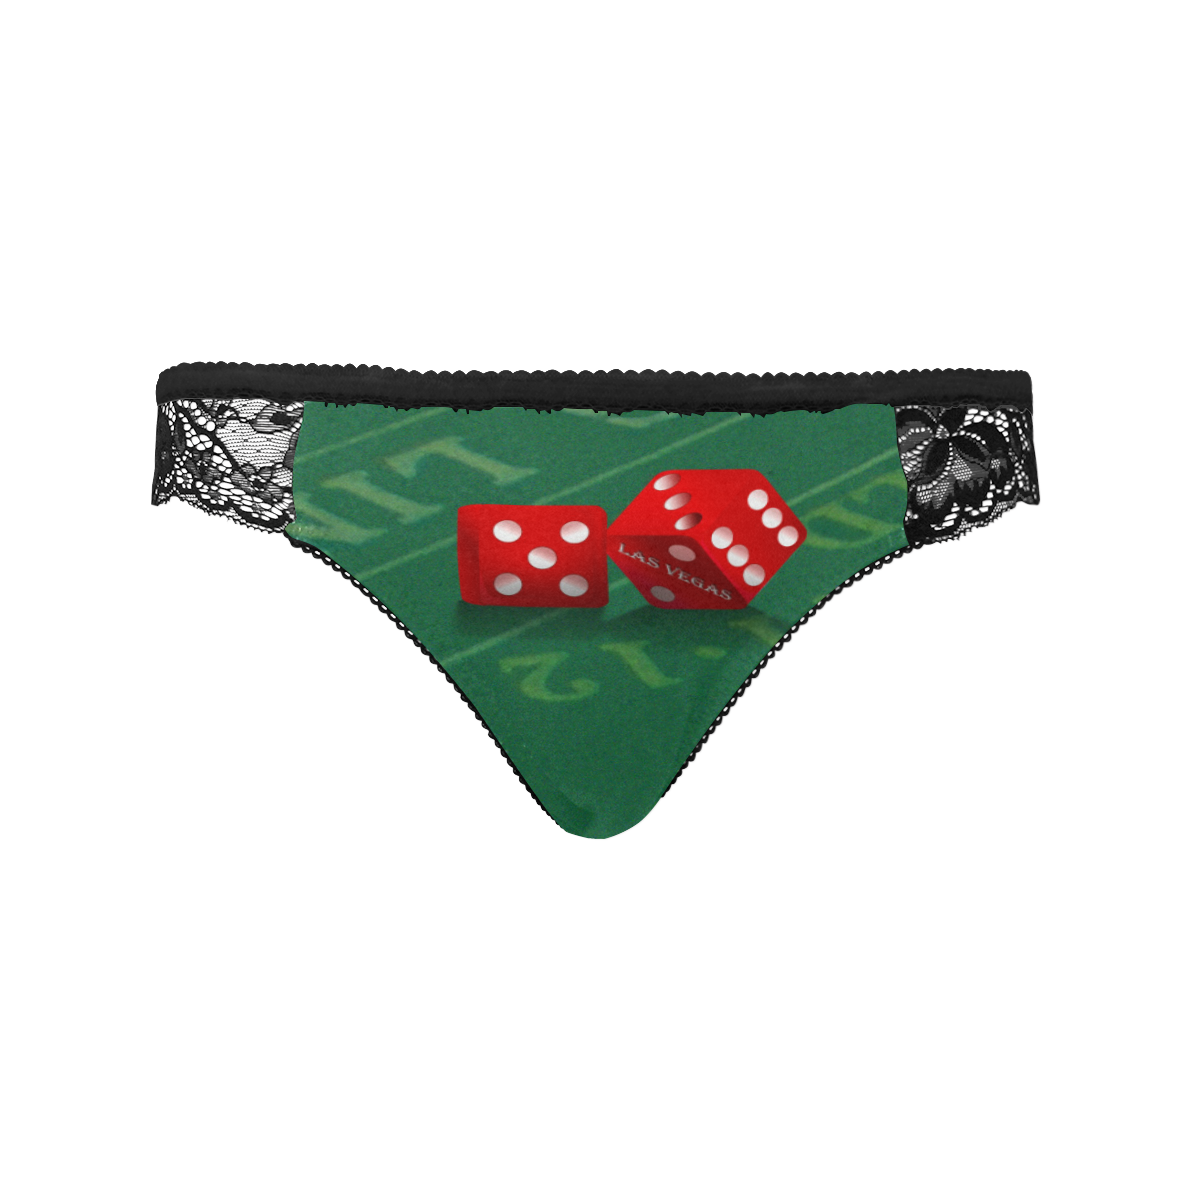 Las Vegas Dice on Craps Table Women's Lace Panty (Model L41)